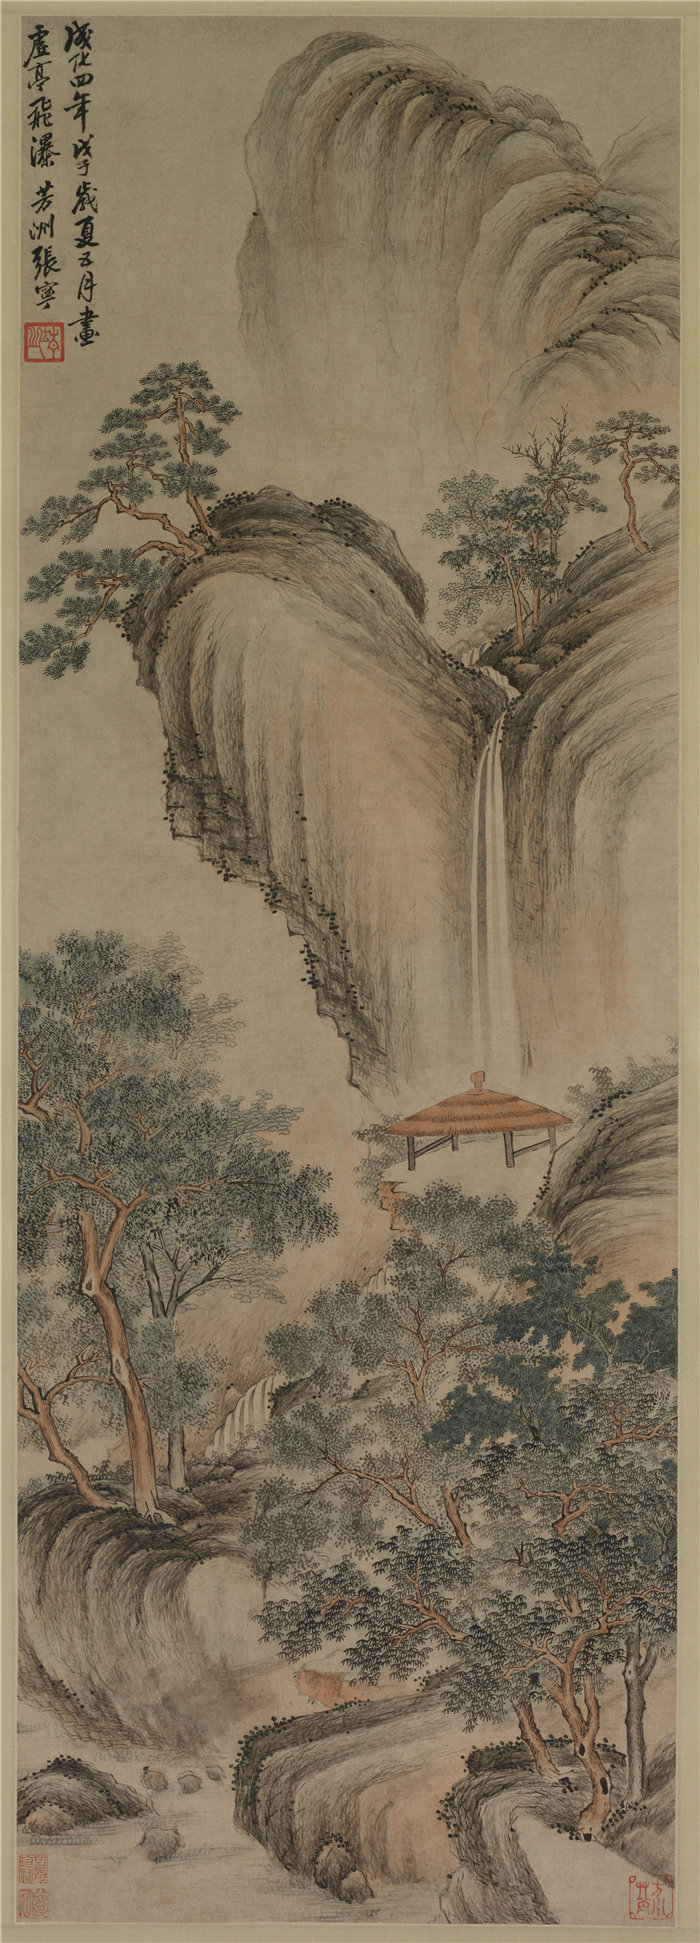 中国明朝画家张宁作品-《空乔木和瀑布》 高清下载